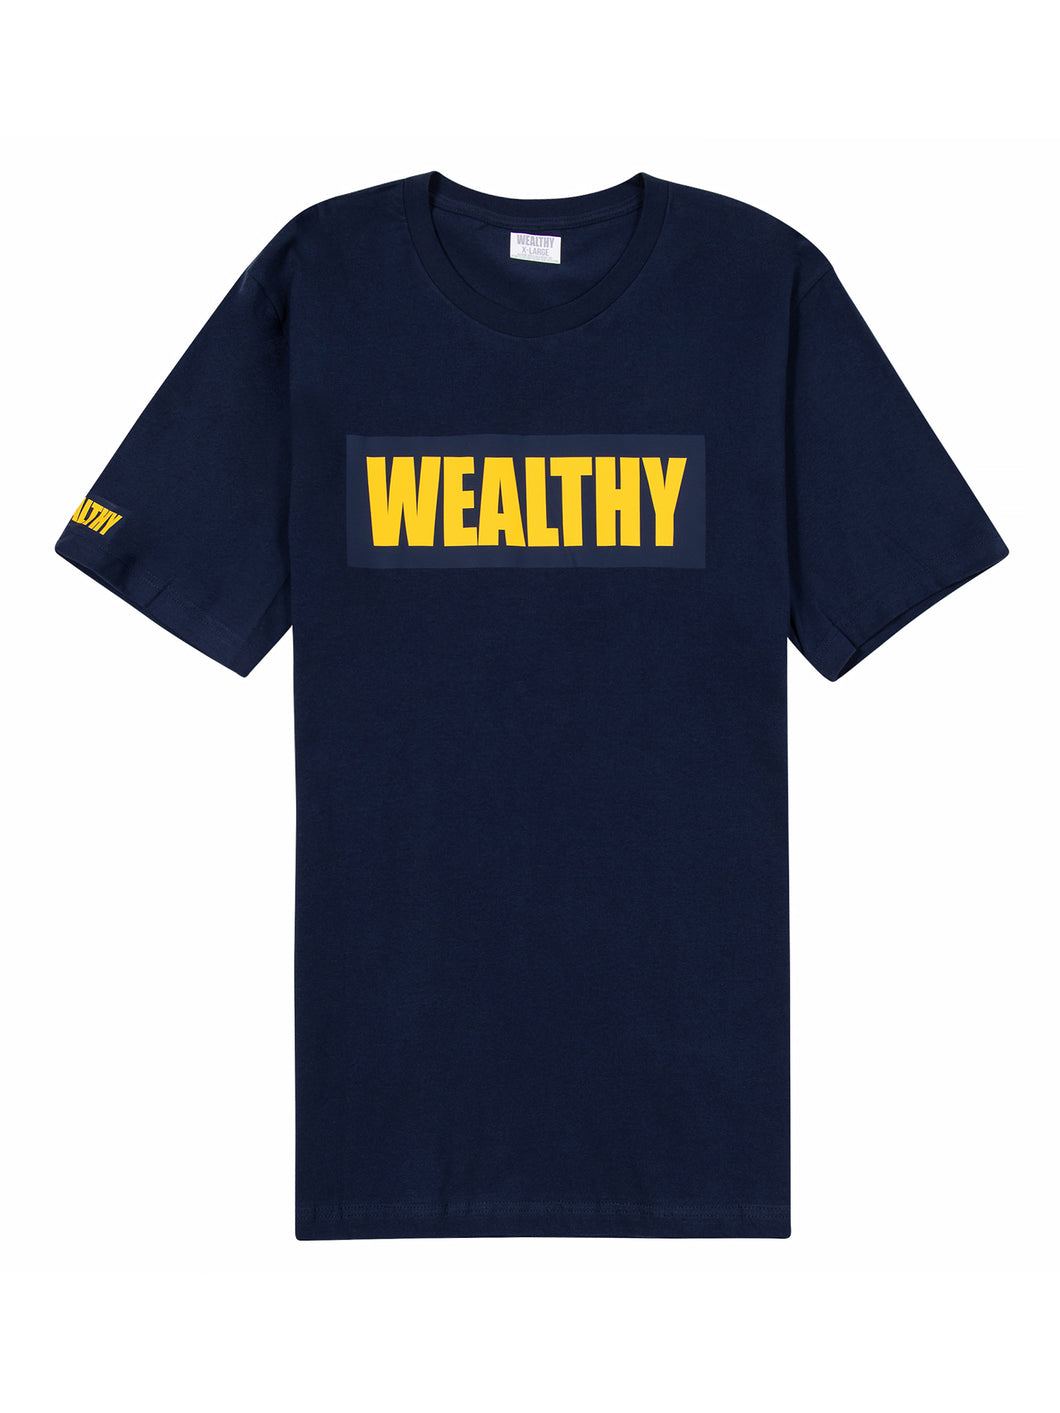 Wealthy Tee (Navy/Navy/Yellow)